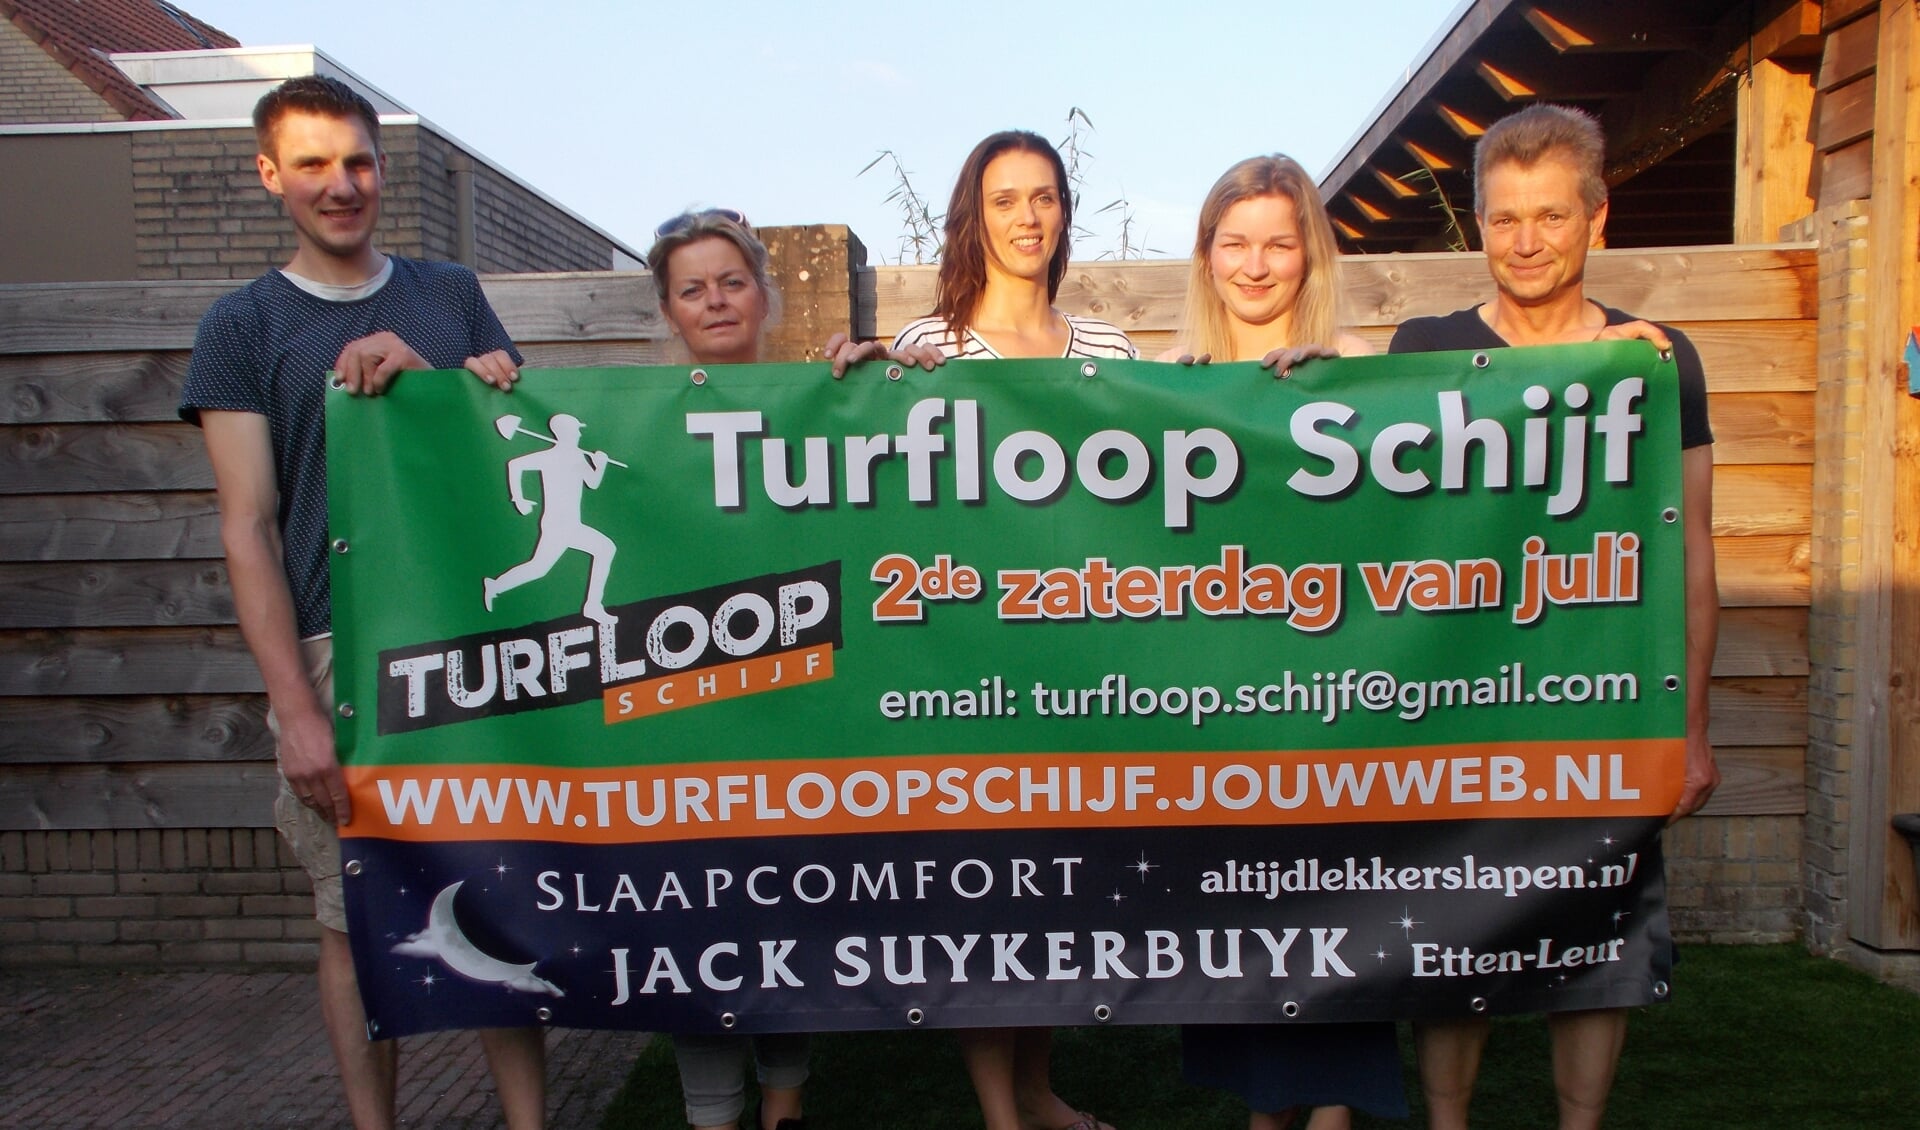 Vlnr: Jeffrey Faes, Wilma Elst, Wilma Bogers,  Michelle van de Sande en Wim van de Sande zijn klaar voor de Turfloop Schijf. FOTO MONIQUE JANSEN